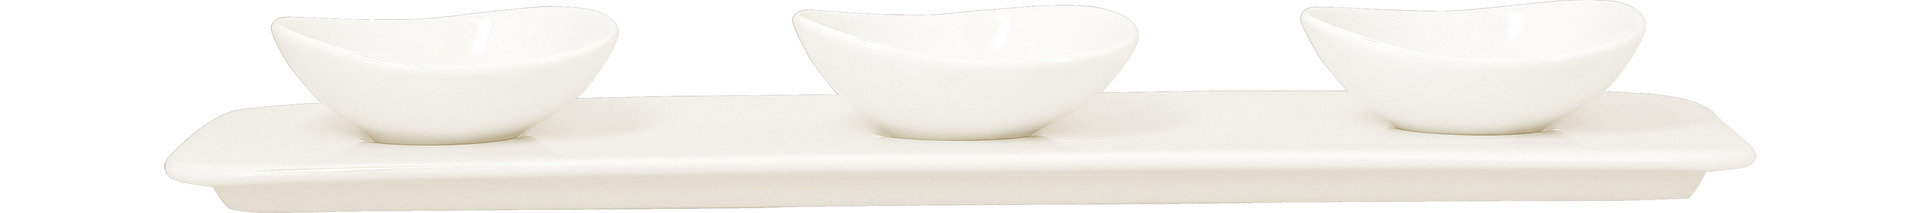 Schale shaped 80 x 70 mm / 0,05 l plain-white